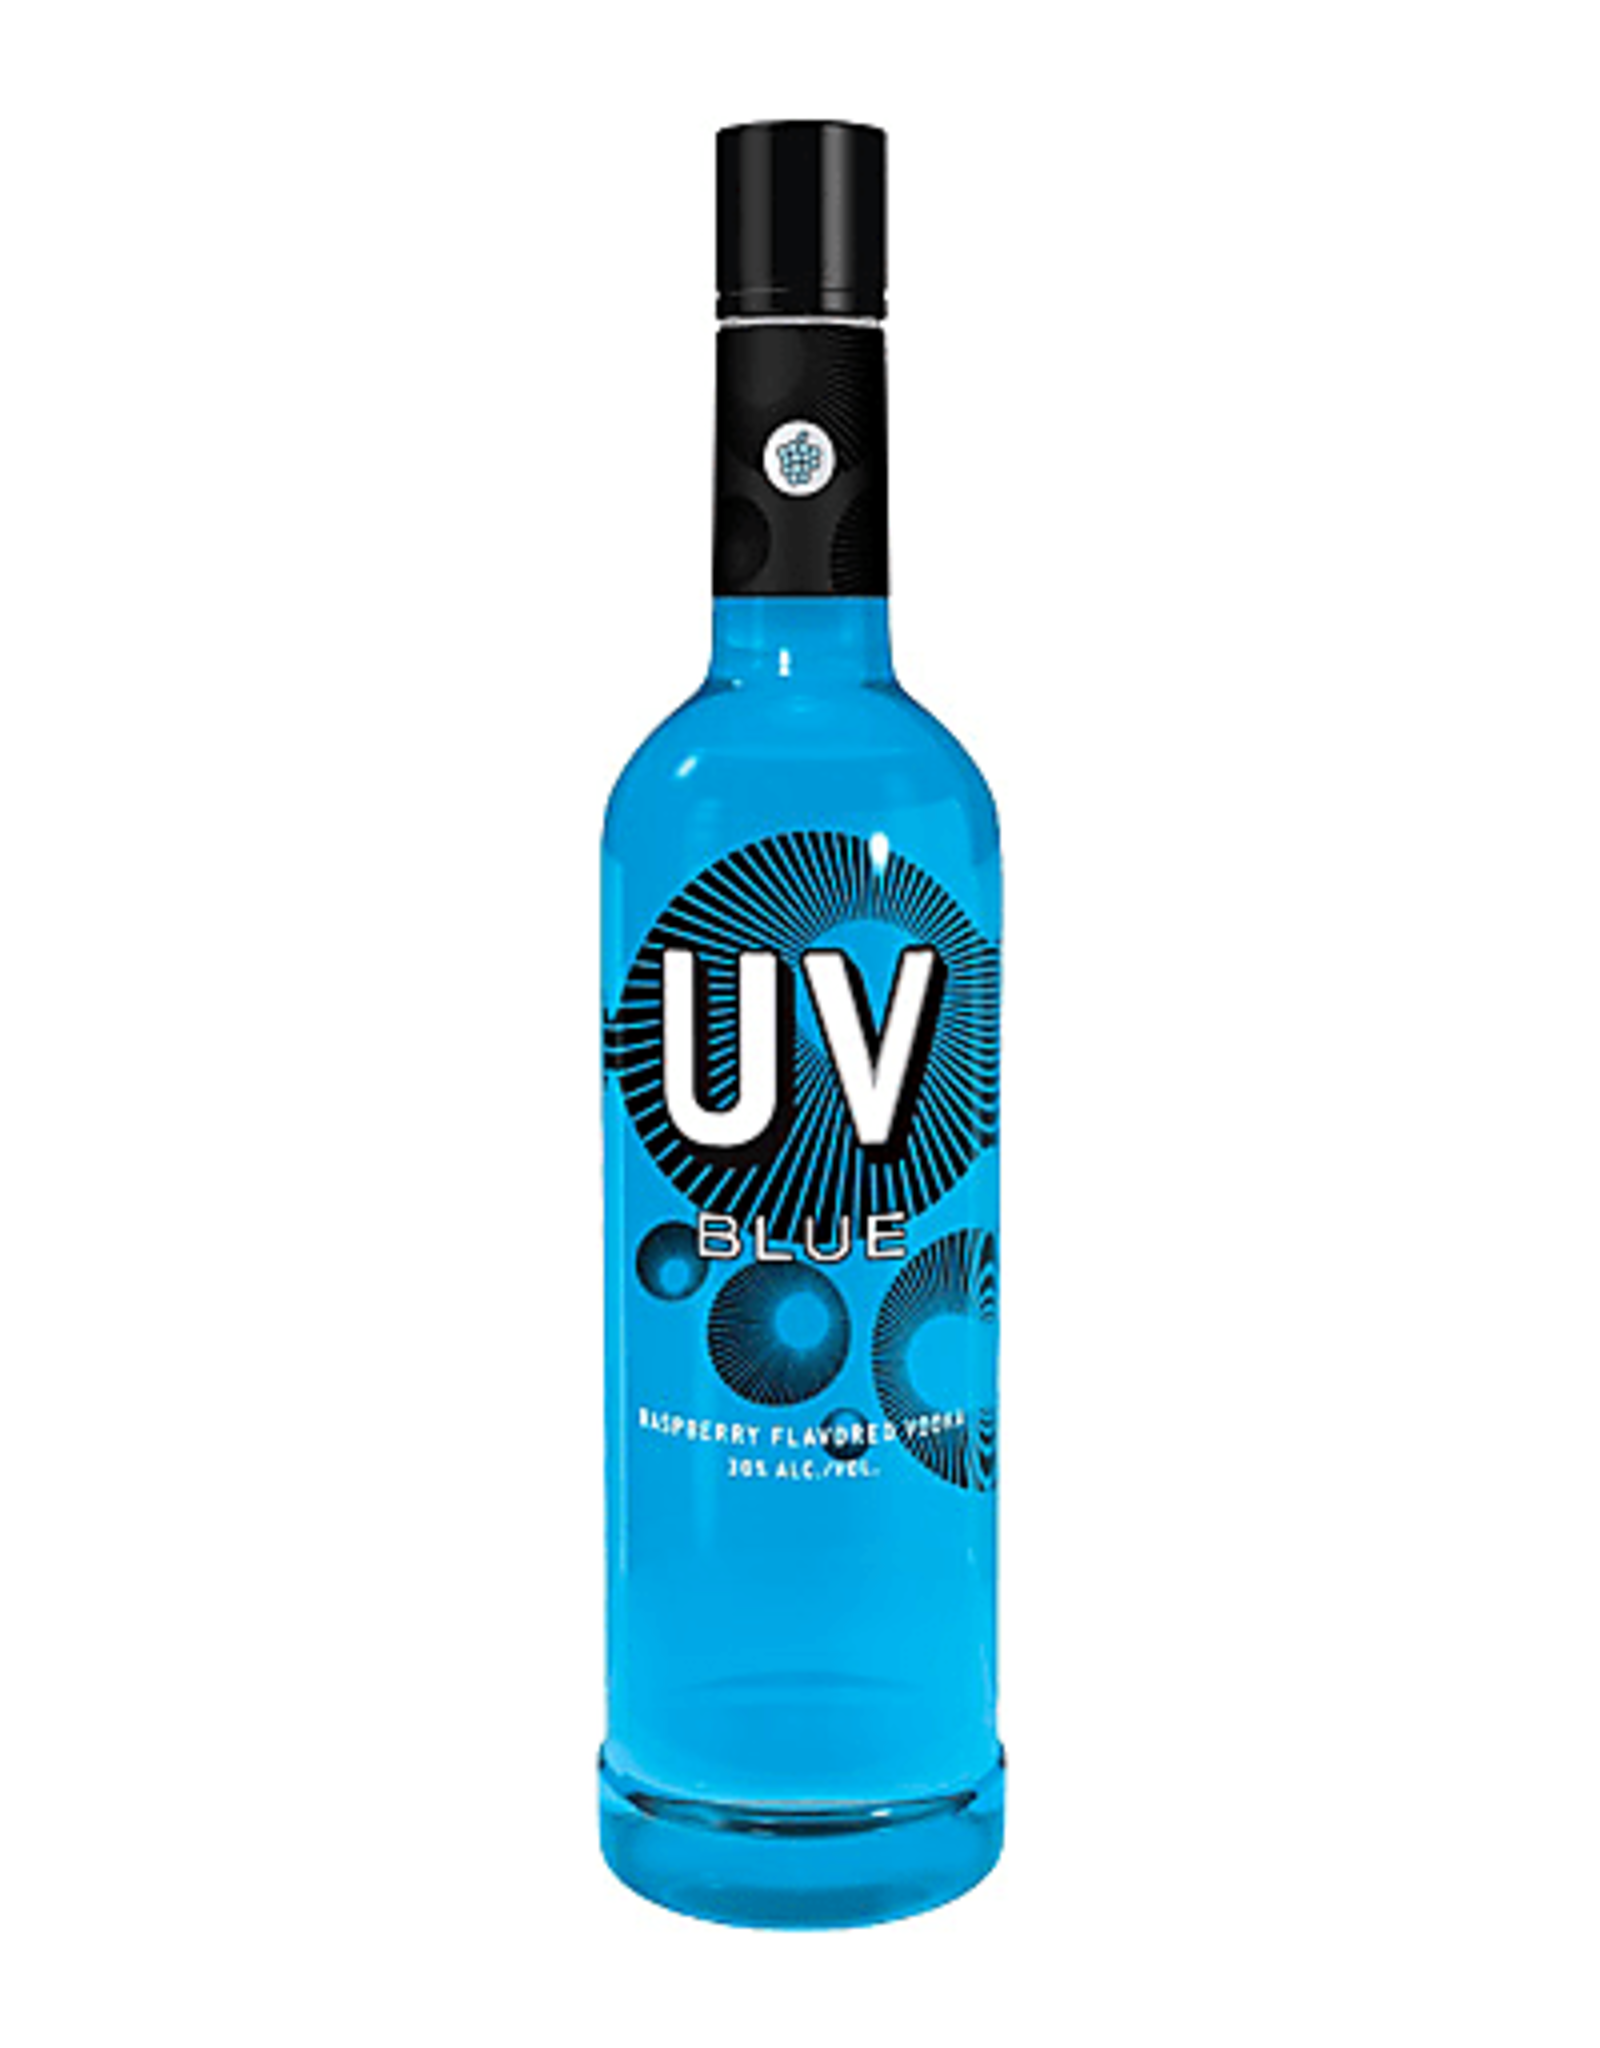 uv-vodka-uv-blue-raspberry-flavored-vodka-the-hut-liquor-store